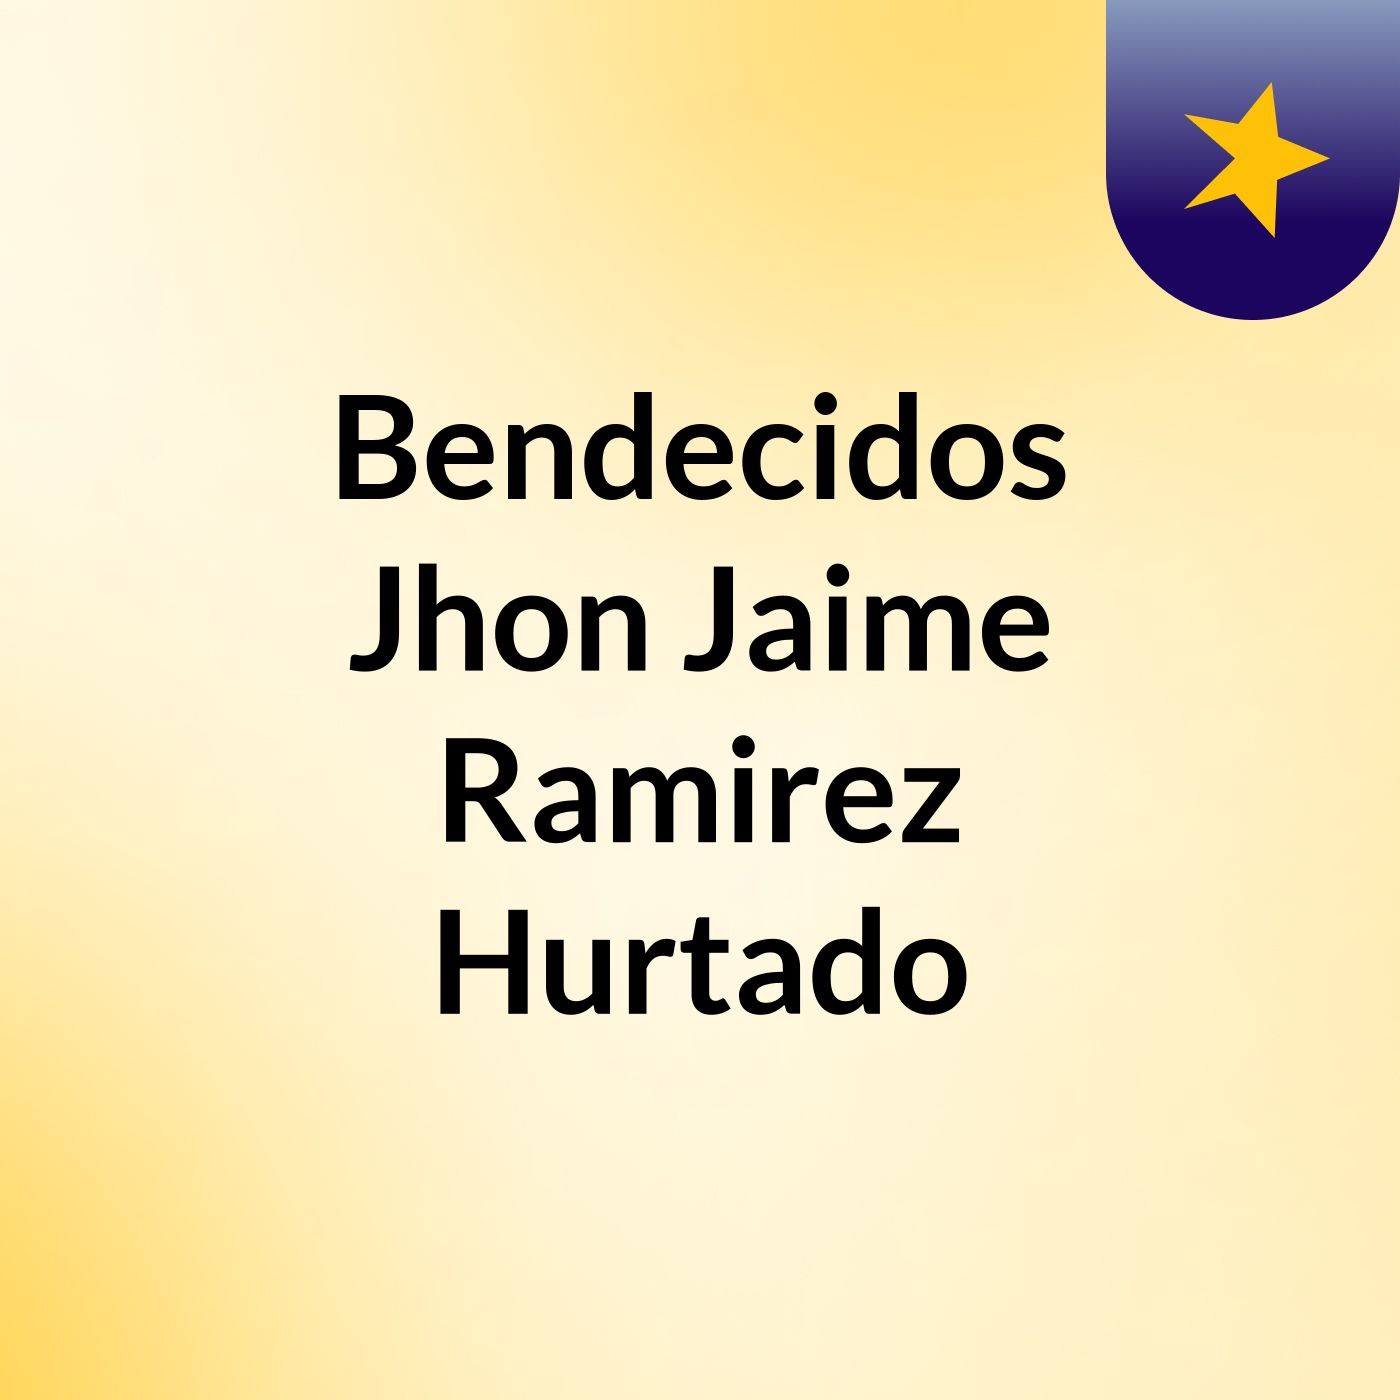 Episodio 2 - Bendecidos Jhon Jaime Ramirez Hurtado